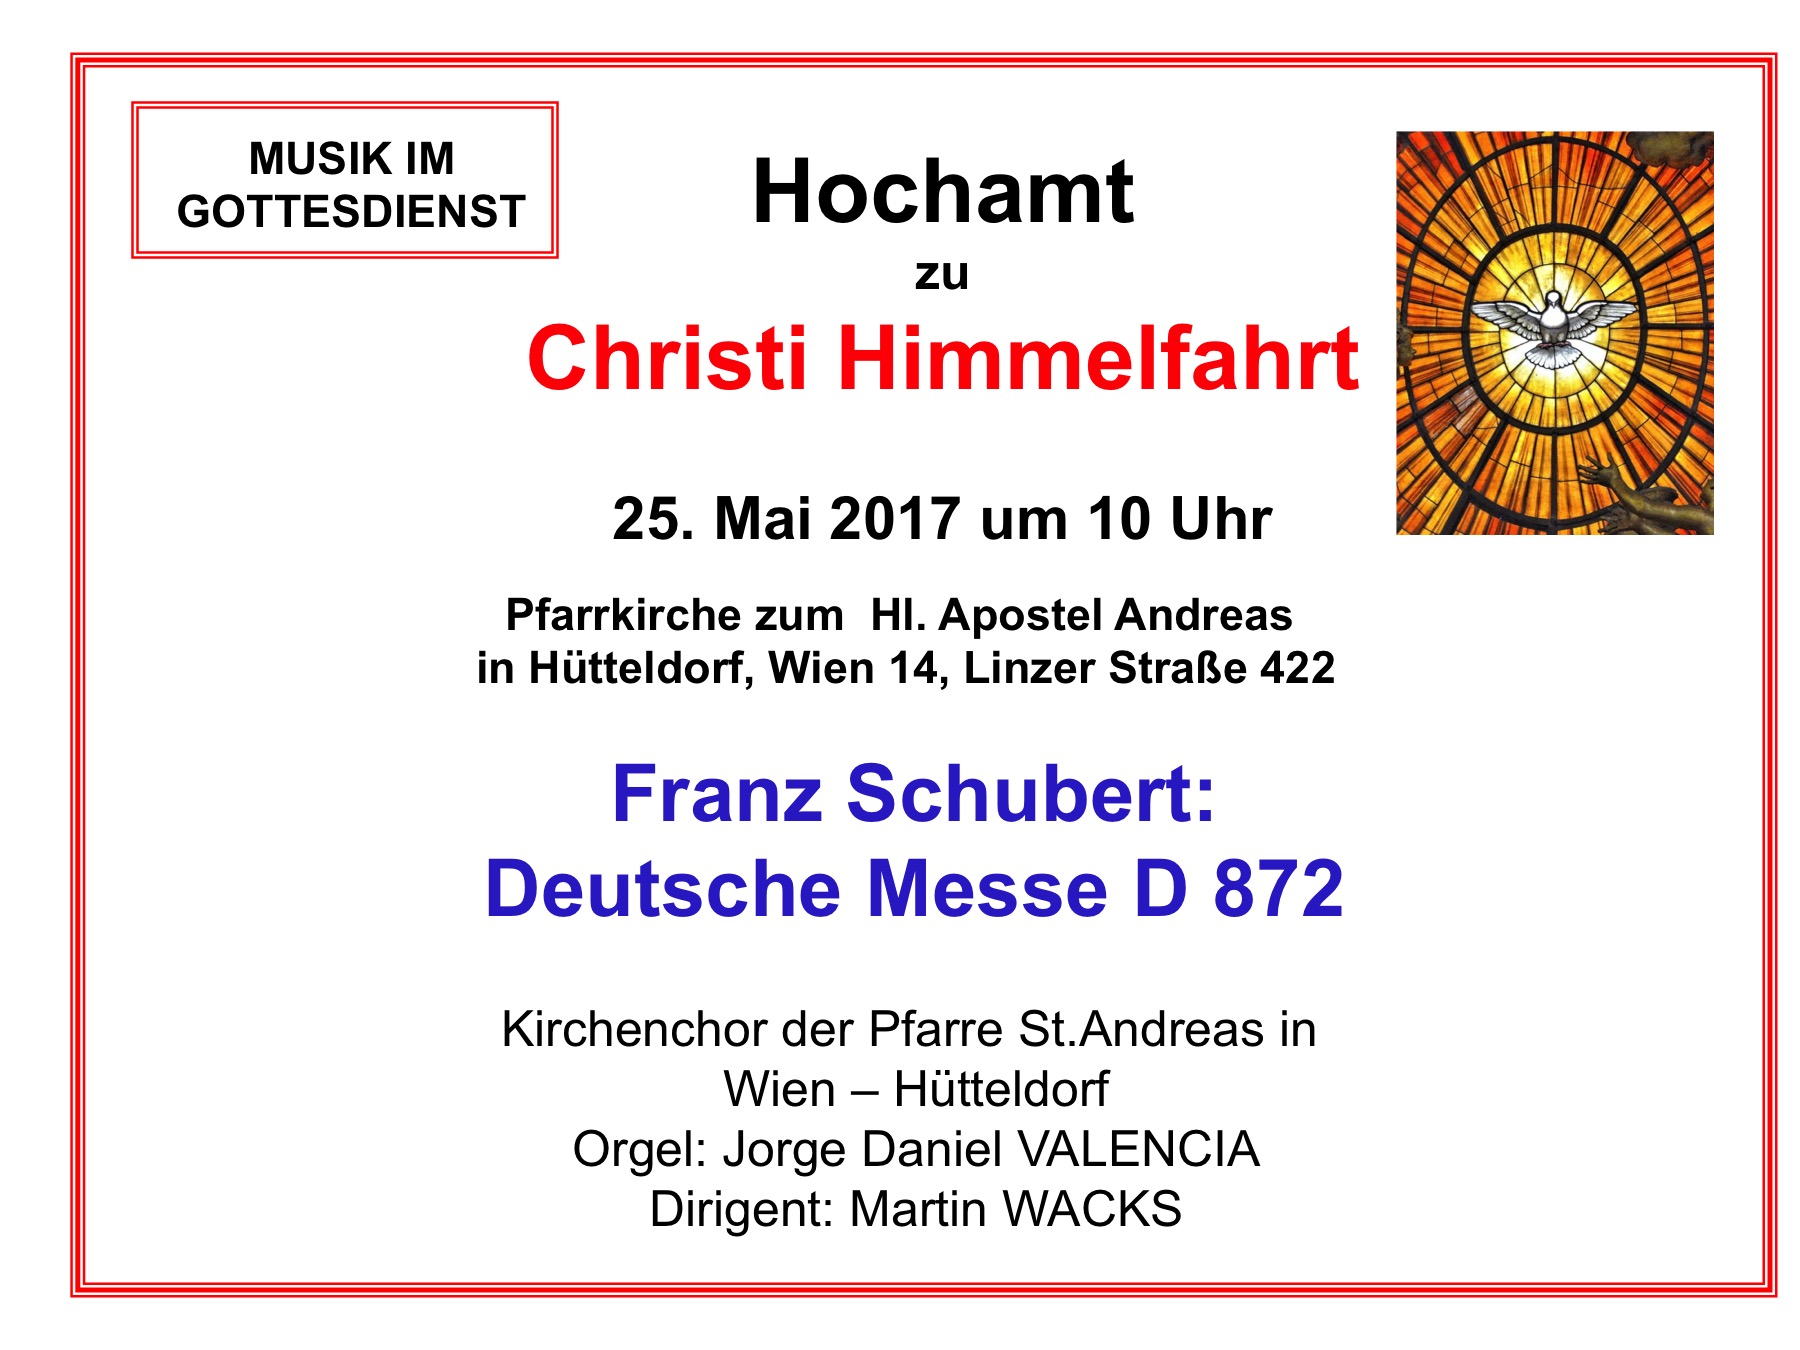 Deutsche Messe von Schubert